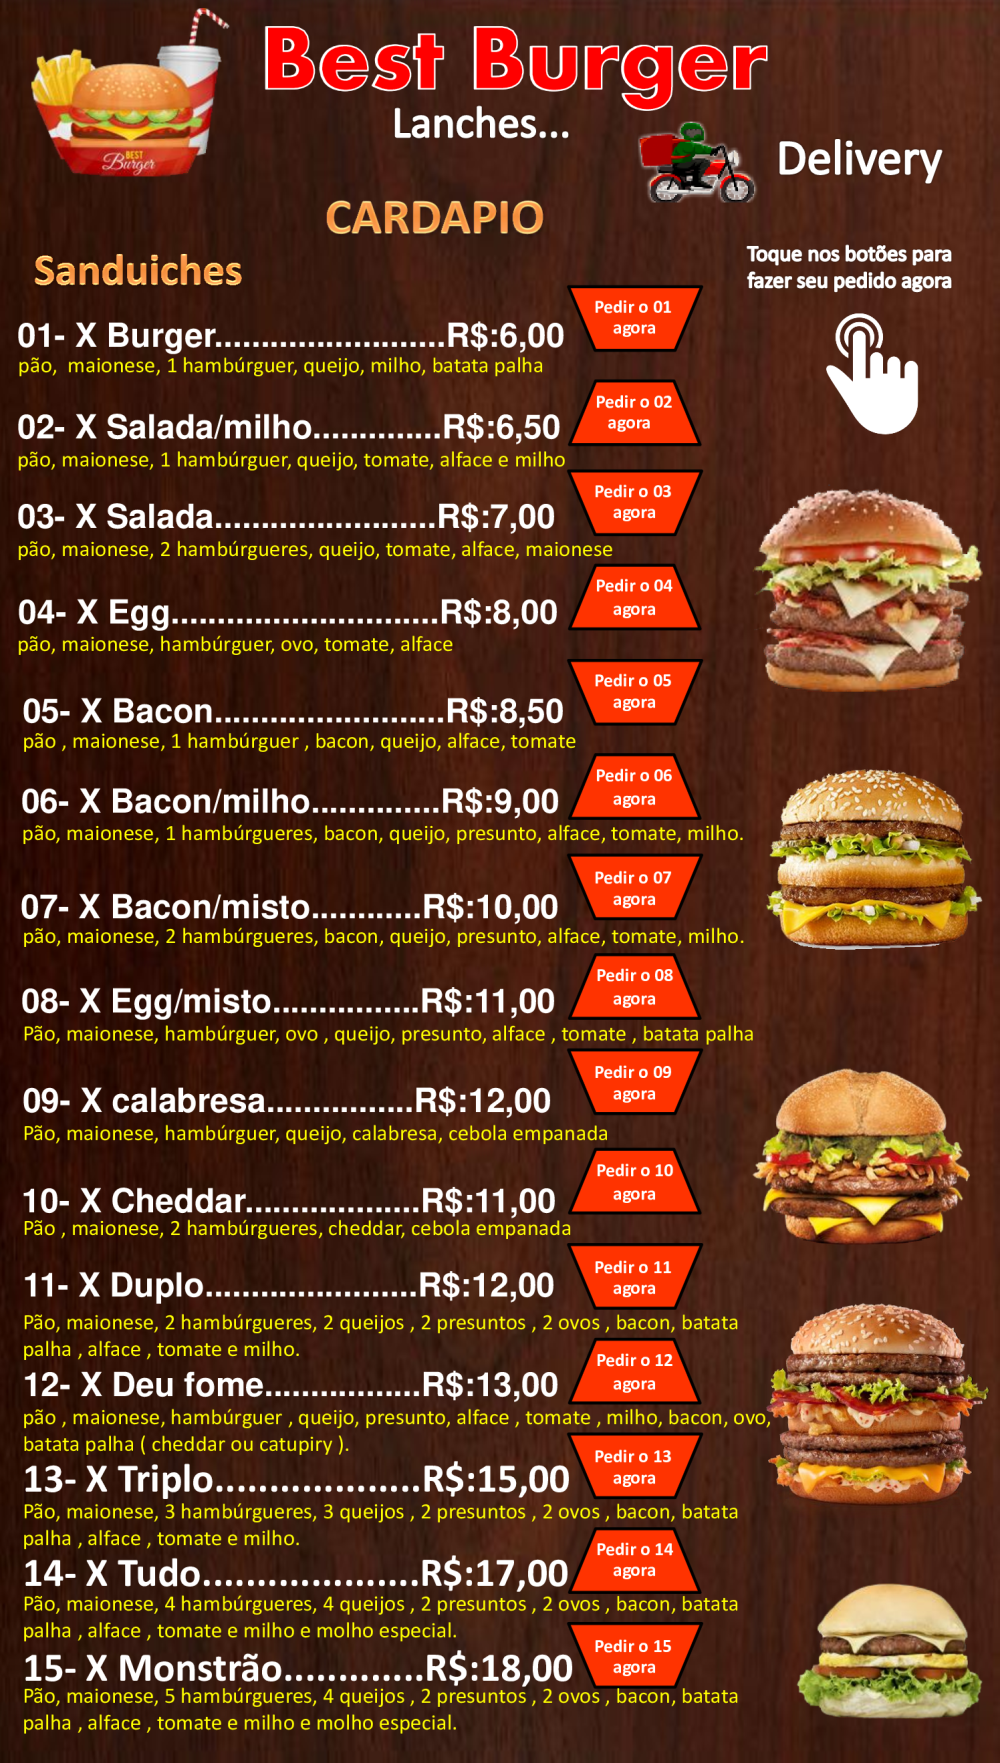 Cardapio Digital Best Burger - Baixar pdf de Doceru.com - cardapio de hamburguer